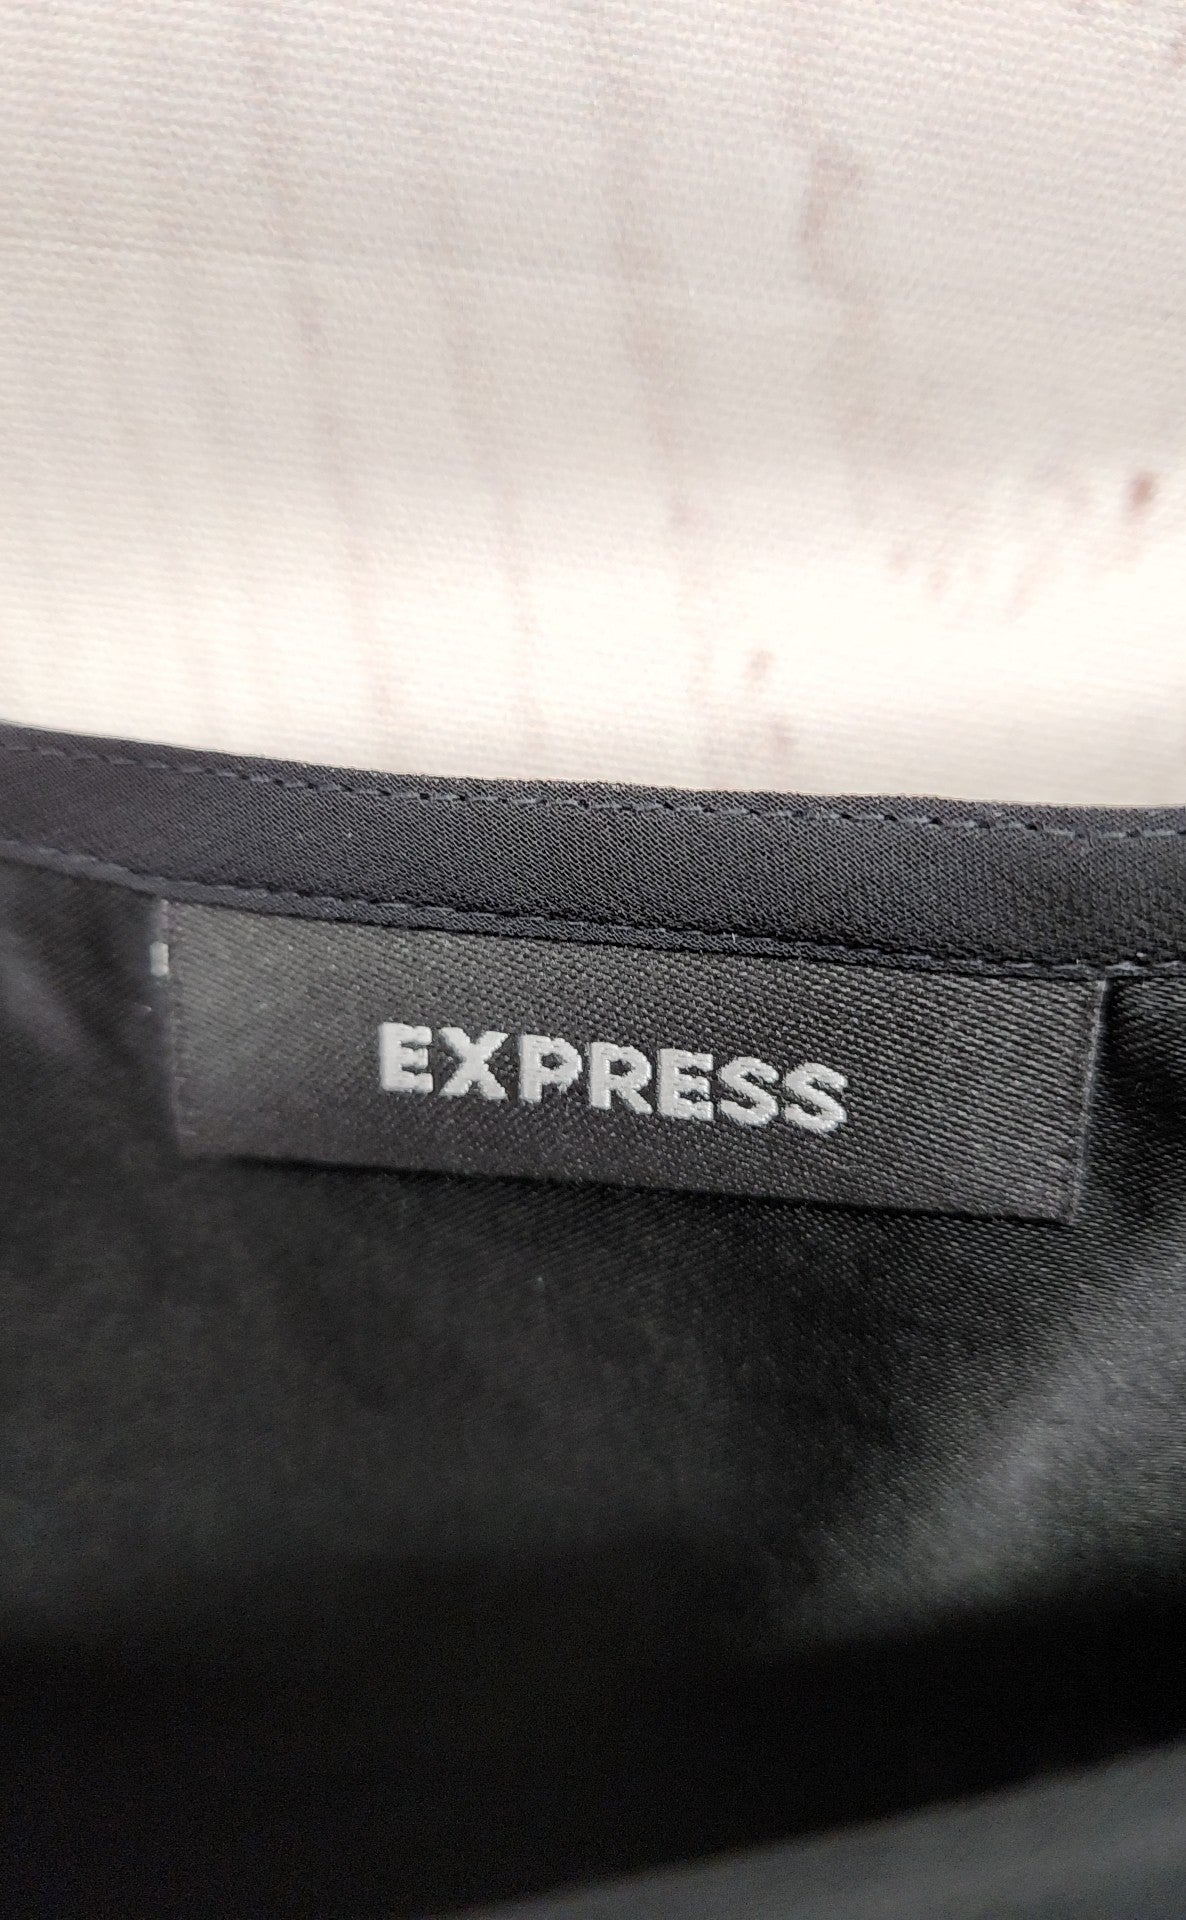 Express Women's Size 3/4 Black Skirt